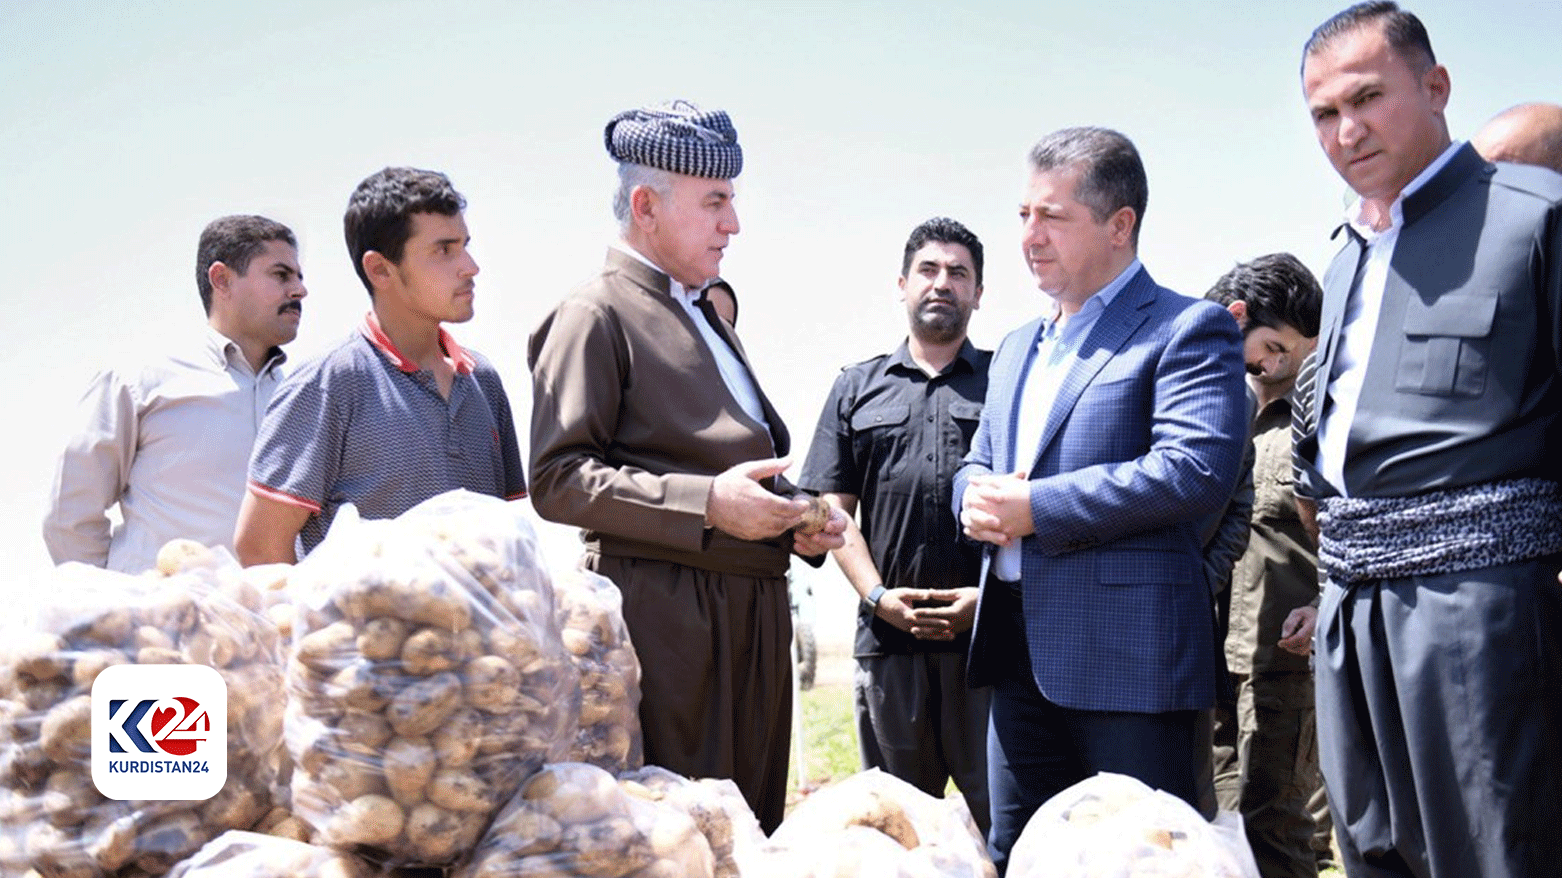 PM Barzani reaffirms his support for Kurdistan Region farmers